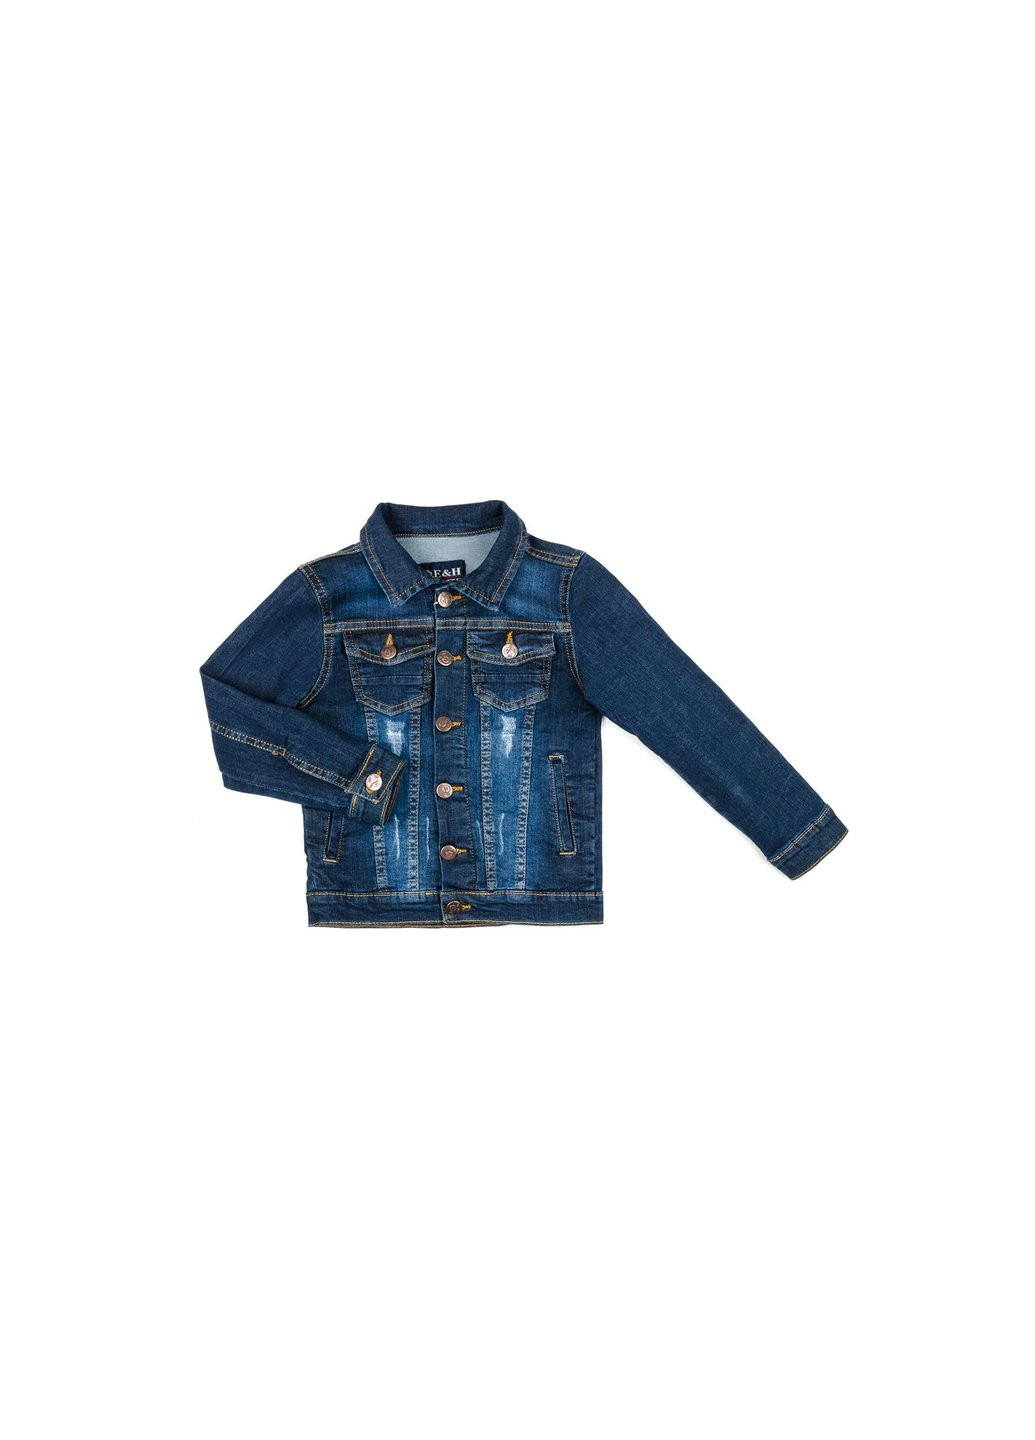 Голубая демисезонная куртка джинсовая (20057-152b-blue) Breeze